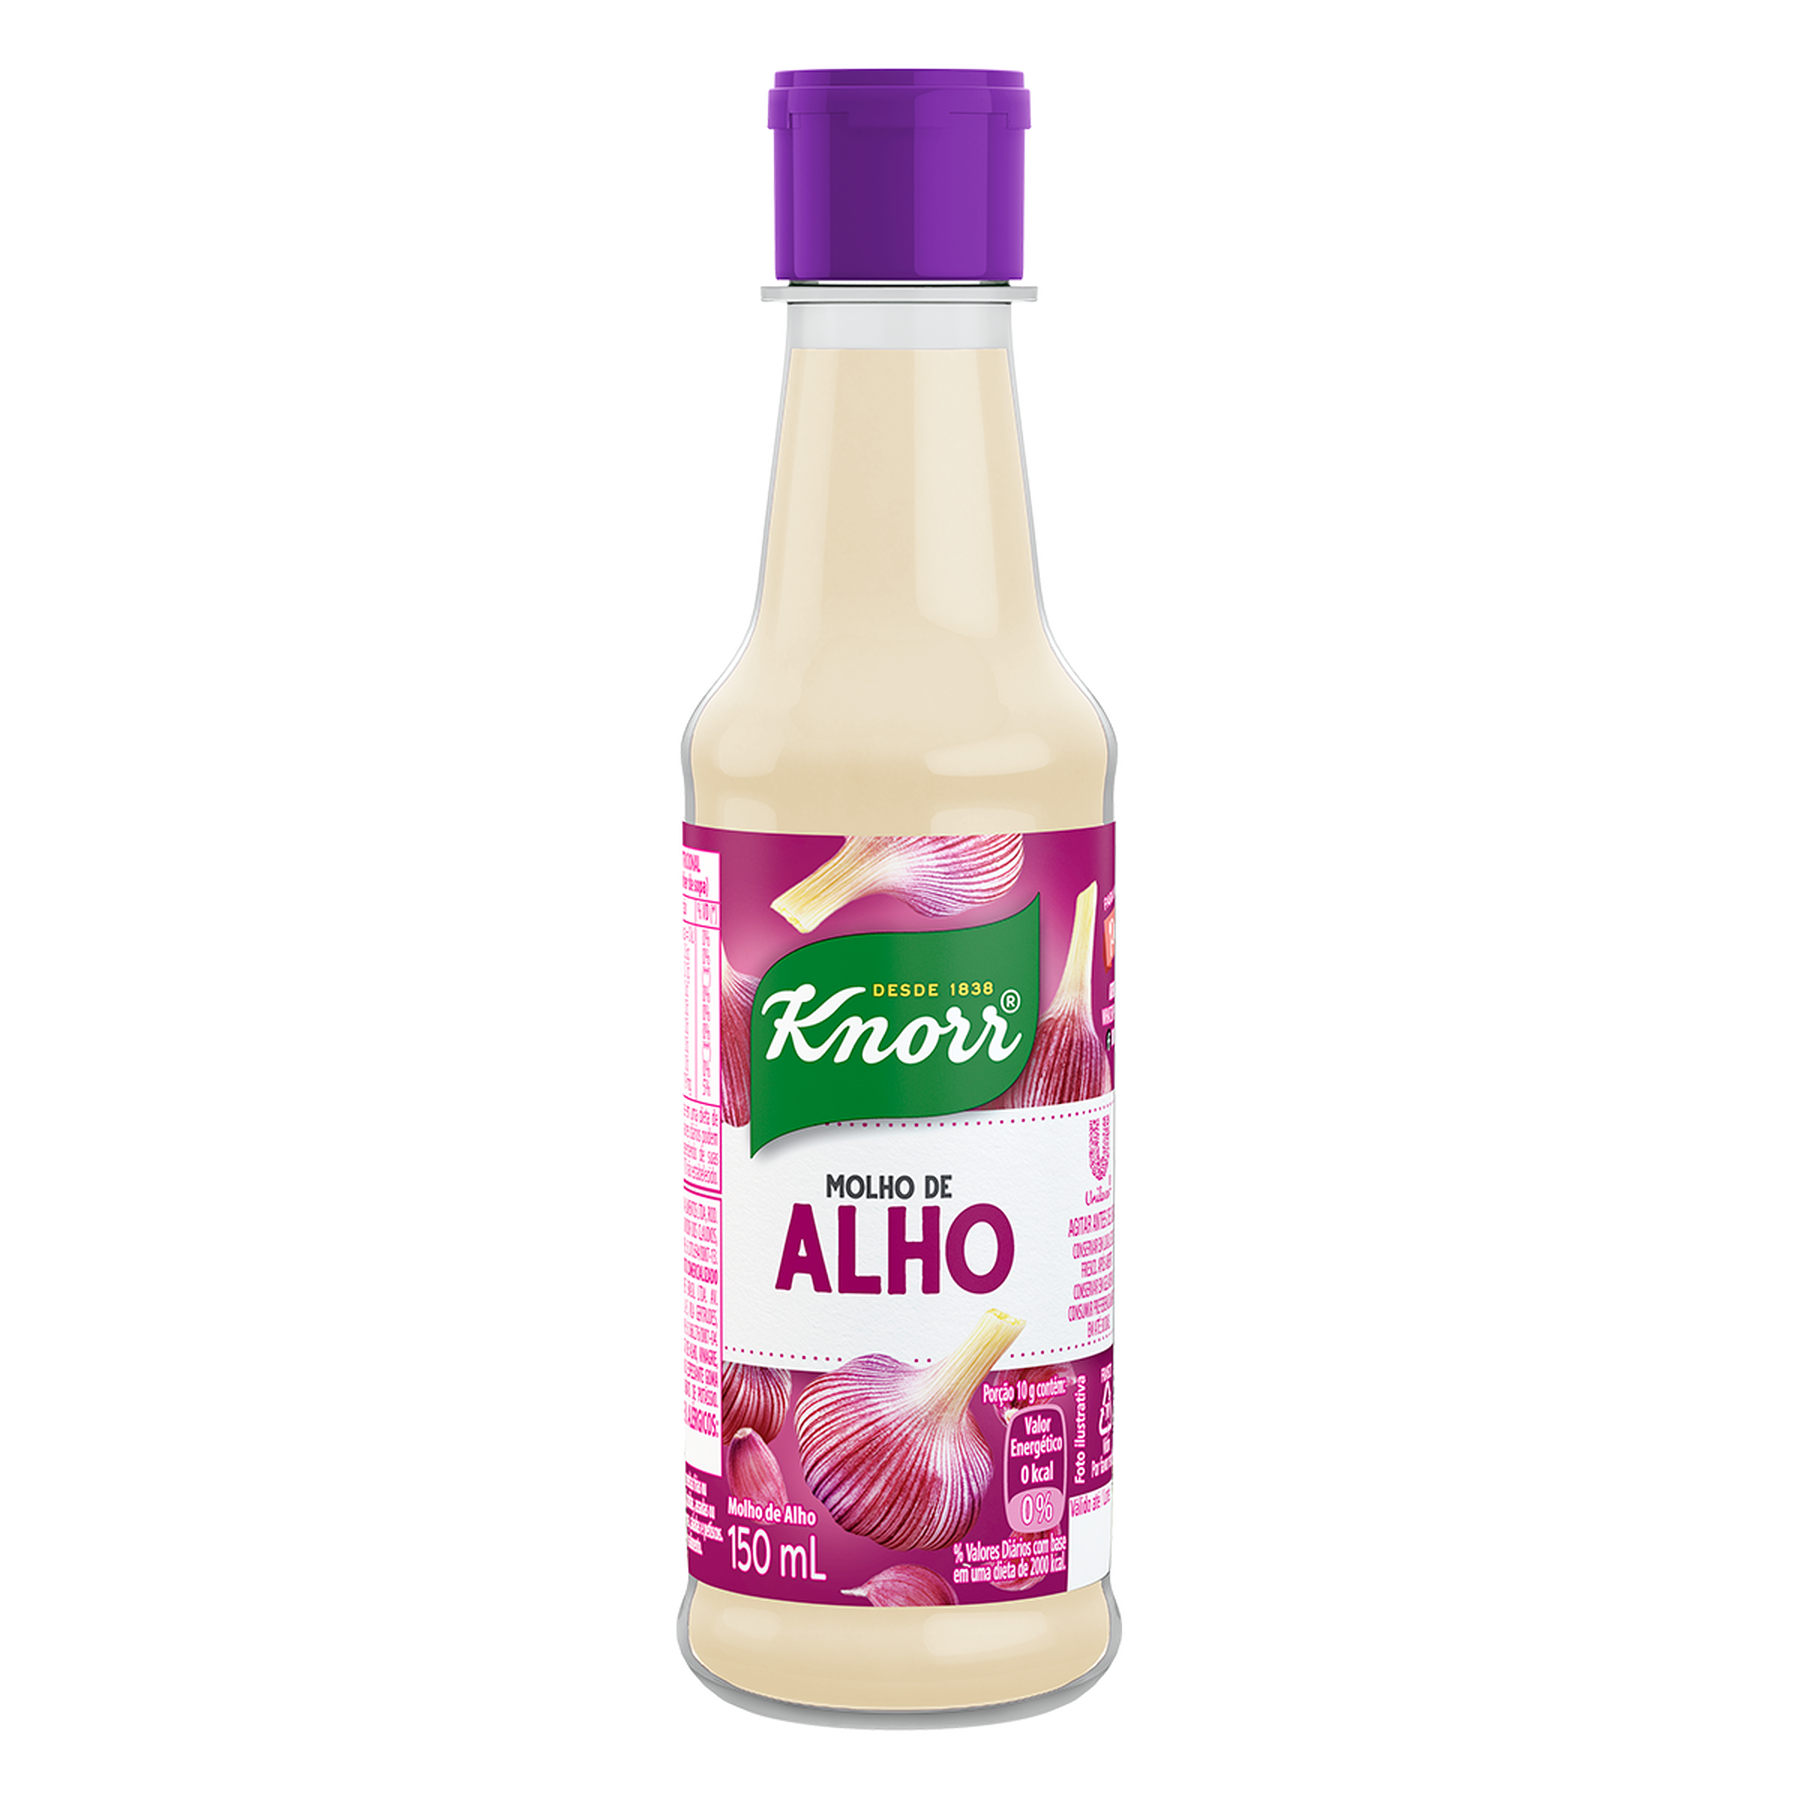 Molho de Alho Knorr 150ml